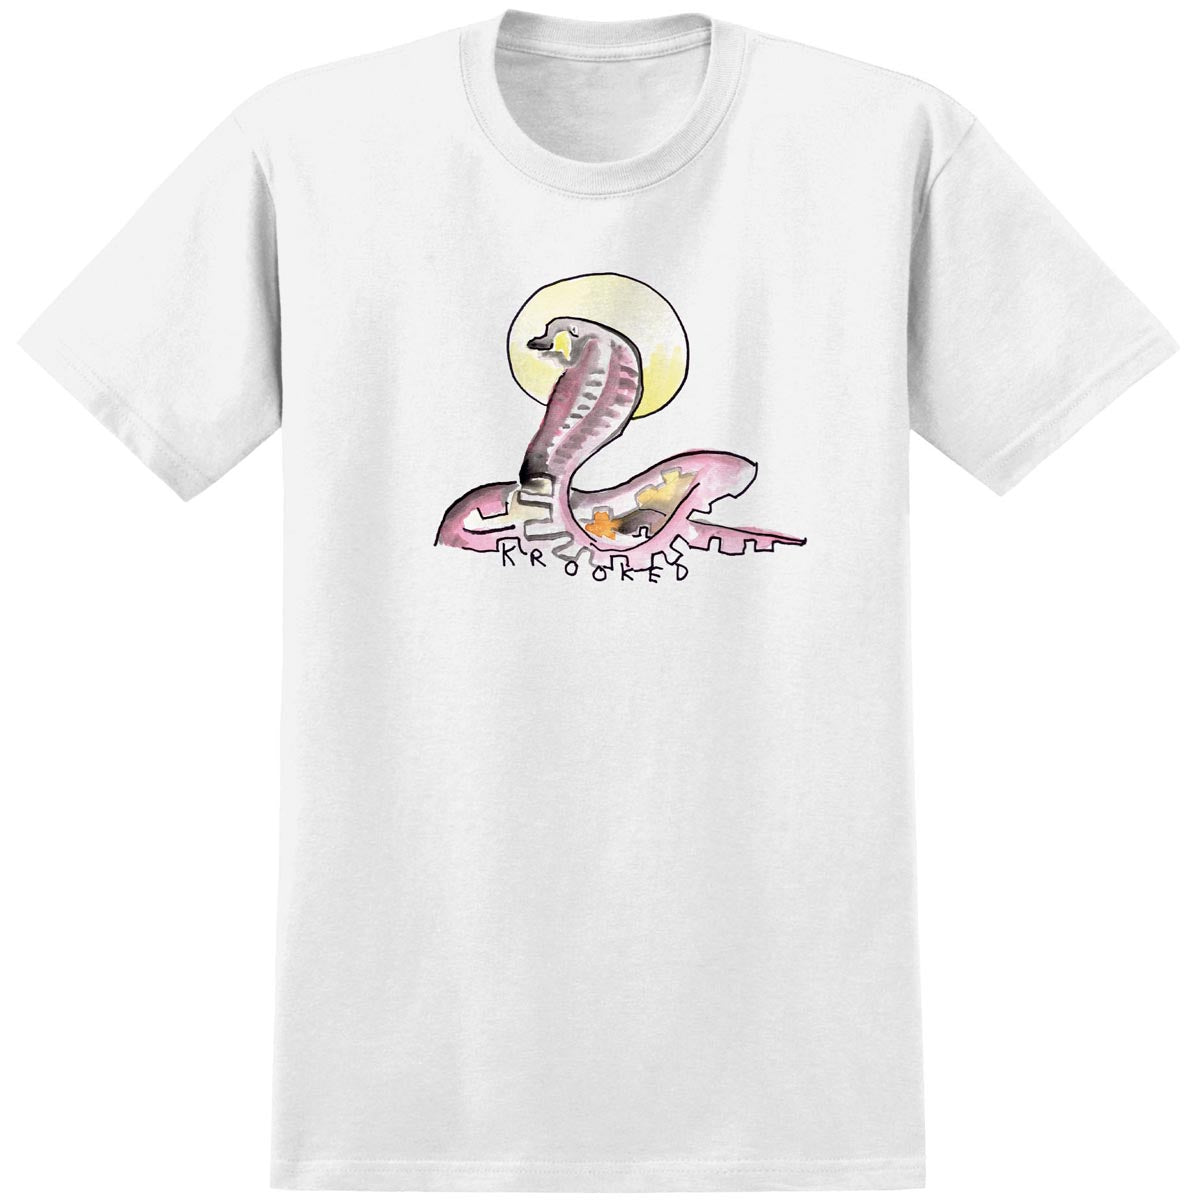 Krooked Snake T-Shirt - White image 1